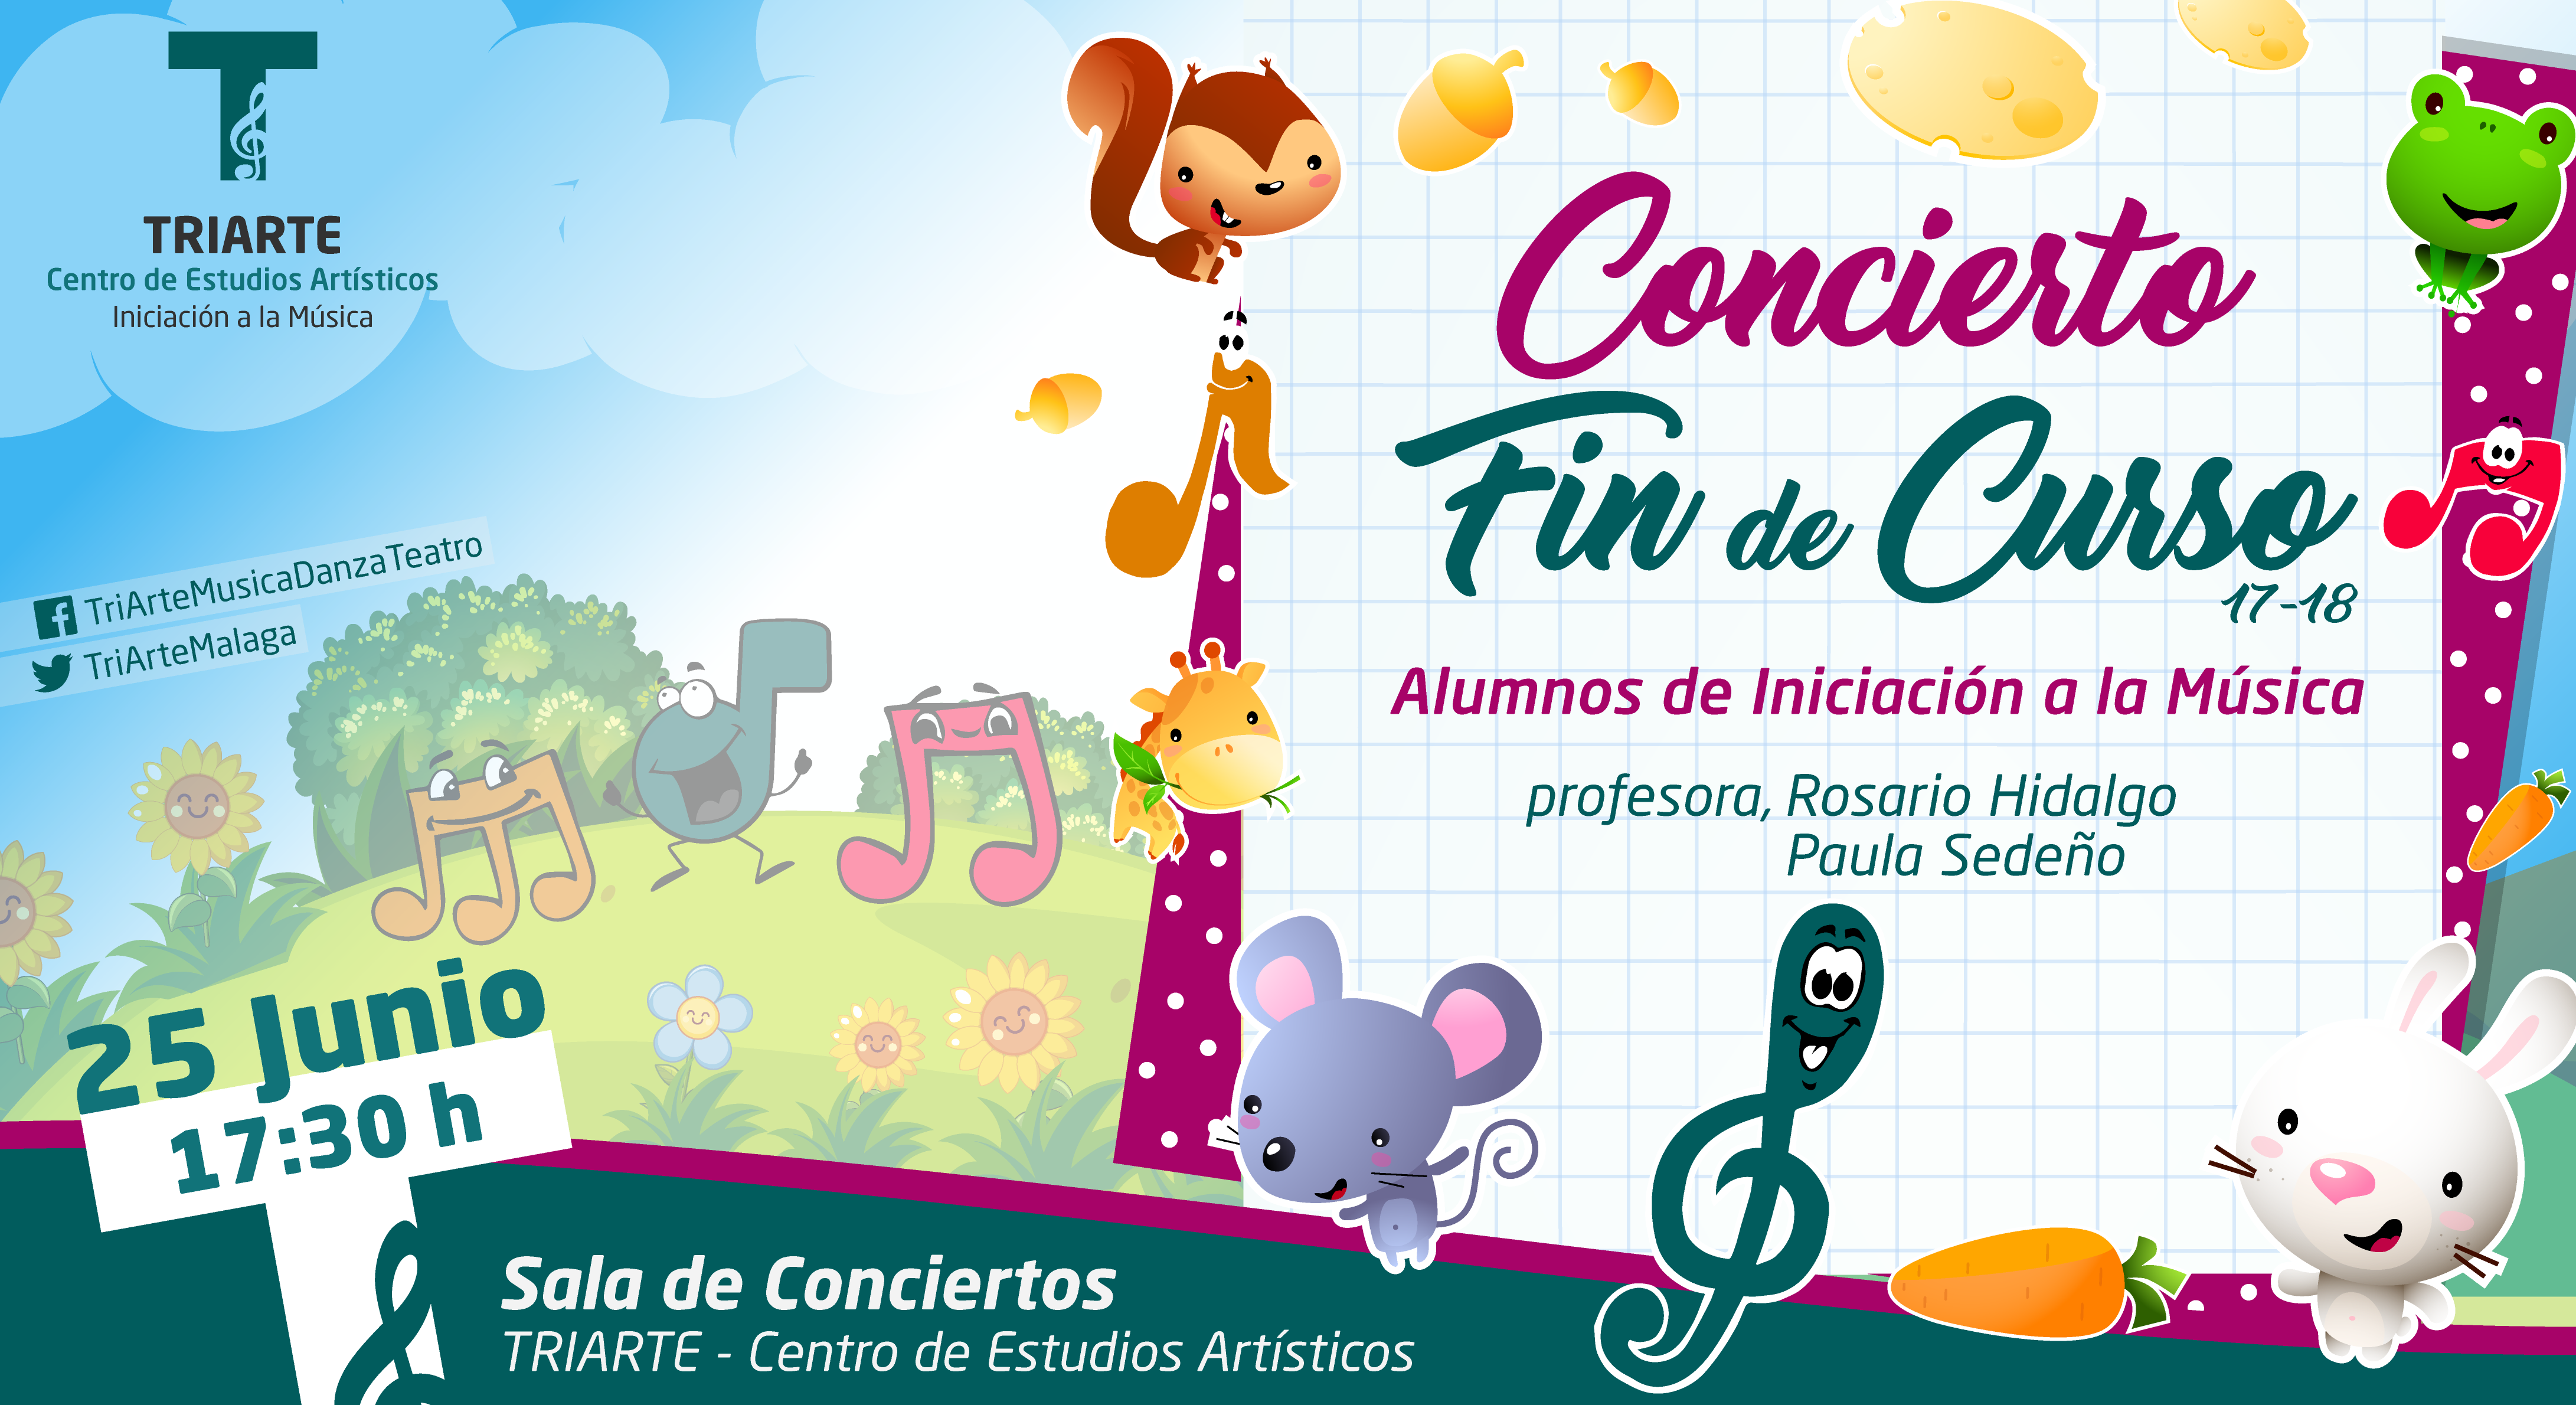 Concierto Fin de Curso. Iniciación a la Música. Triarte, Málaga. Clases de Música para niños de 4 a 7 años